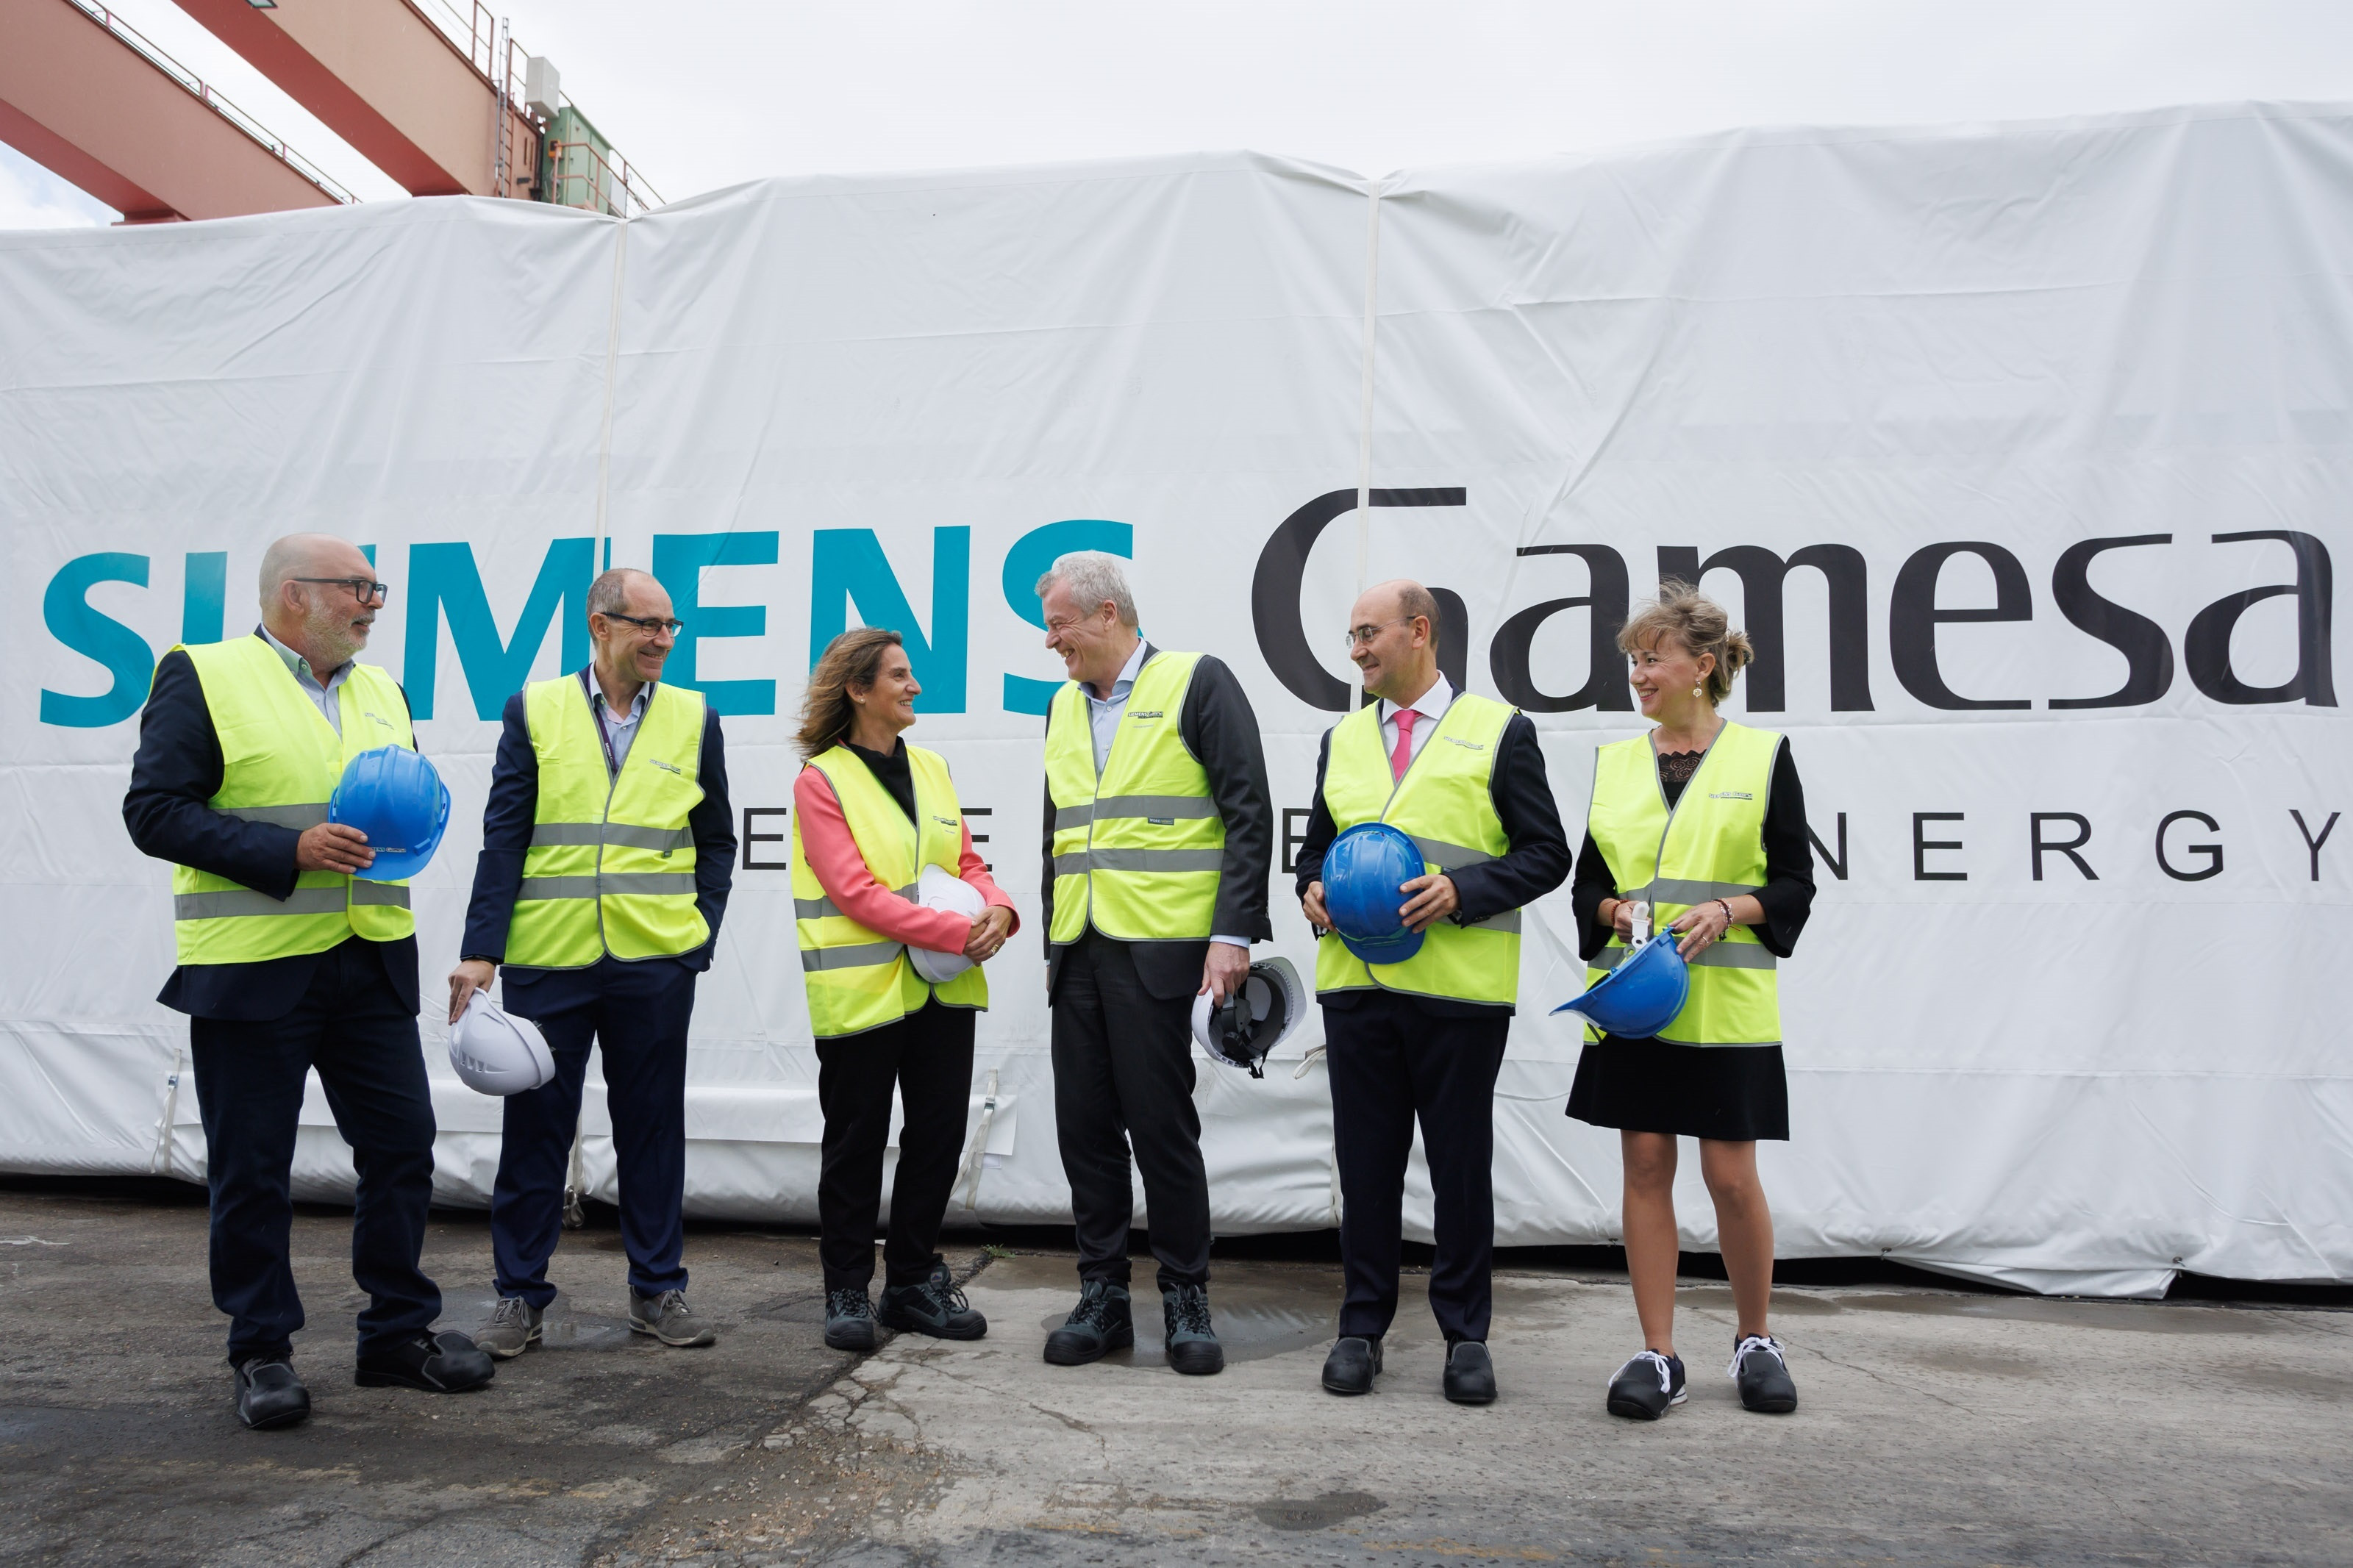 La ministra de Transición Ecológica, Teresa Ribera, junto al CEO de Siemens Gamesa, Jochen Eickholt, durante su visita a la planta de Ágreda (Soria) / Siemens Gamesa